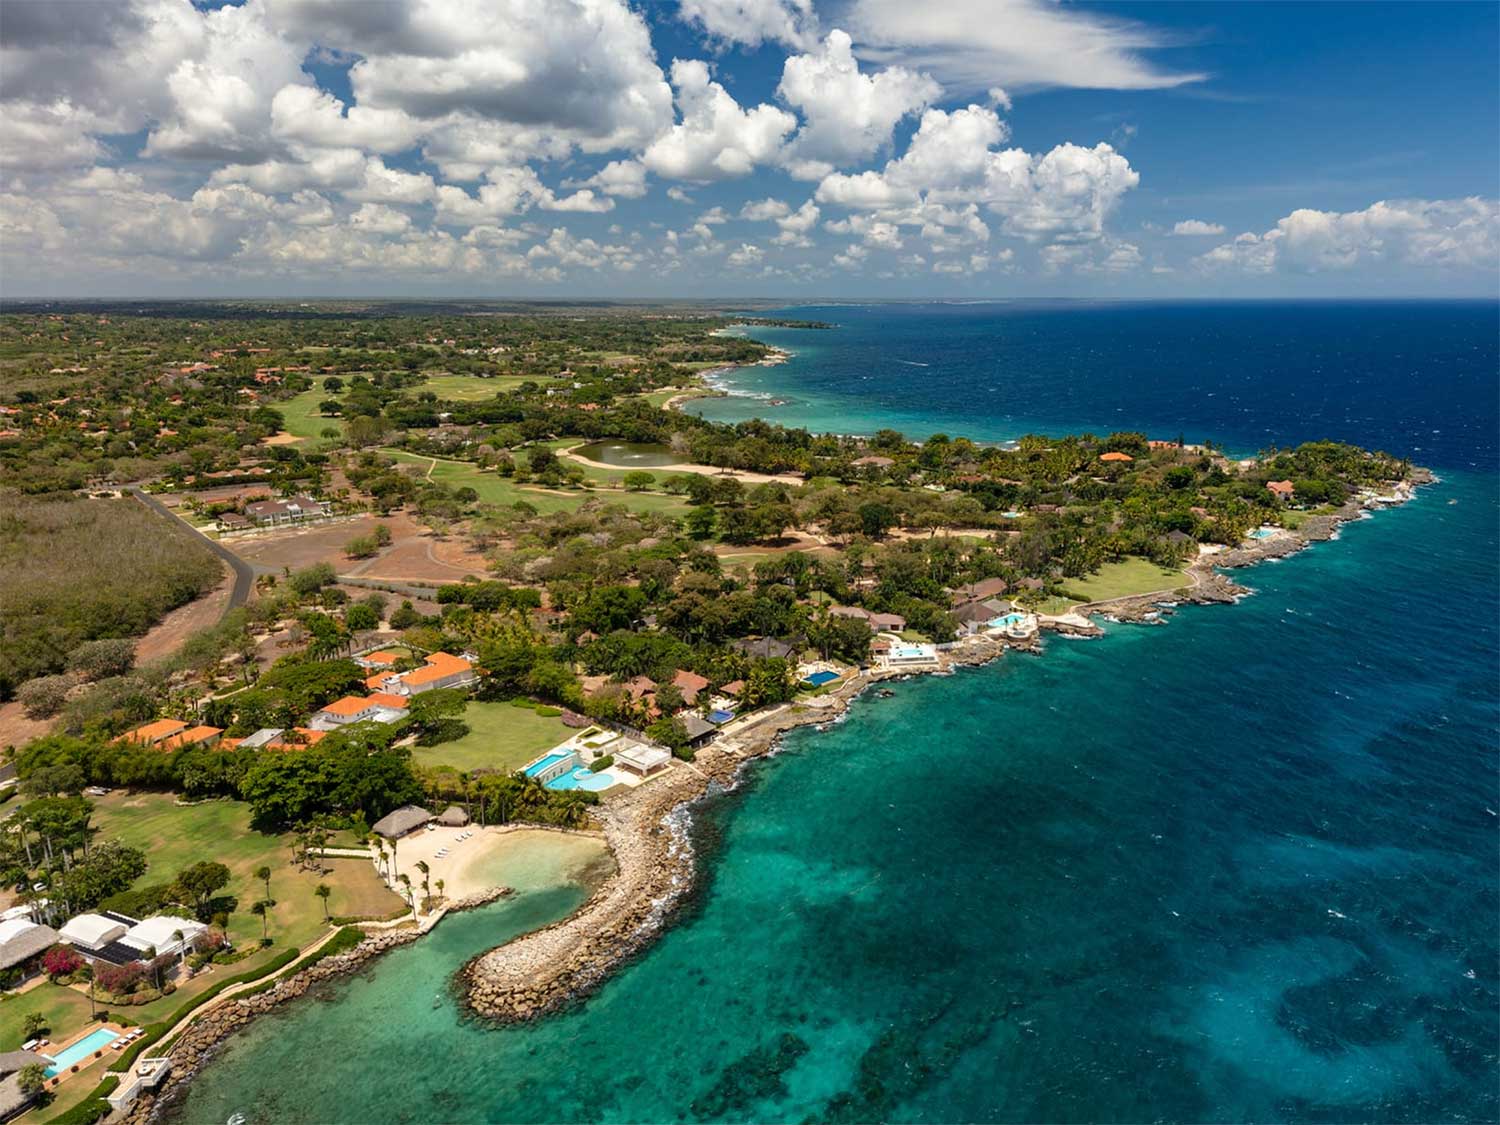 Aerial photo of a beach and beach resort.